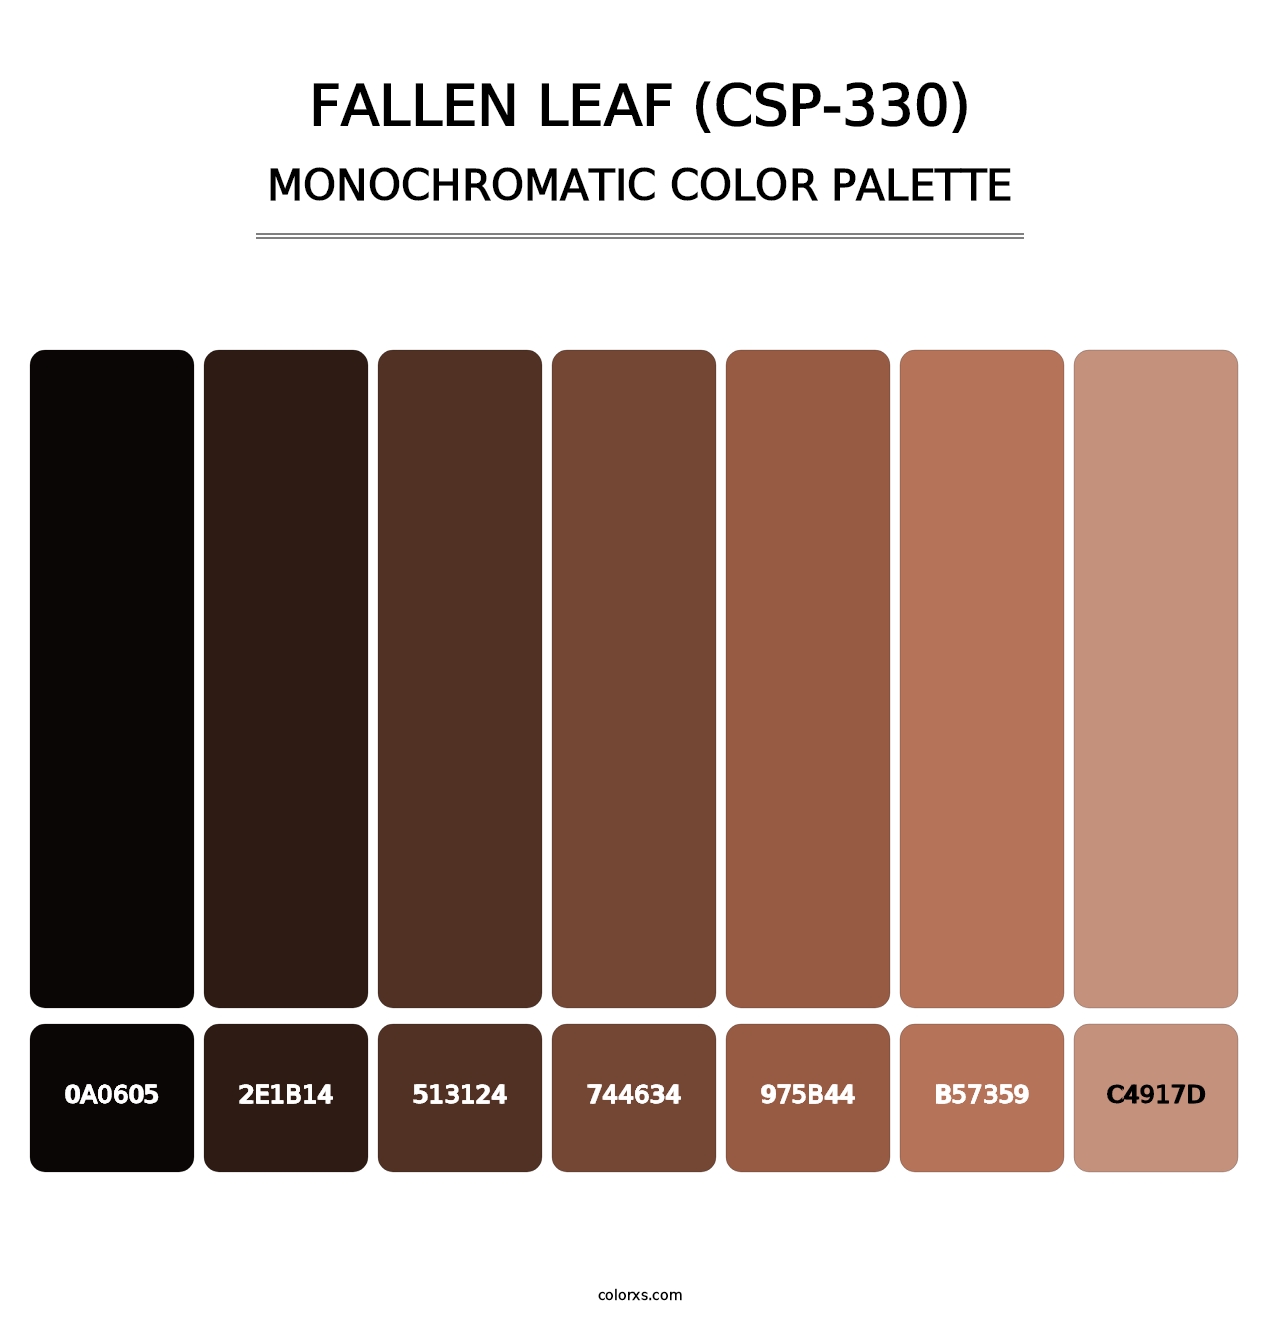 Fallen Leaf (CSP-330) - Monochromatic Color Palette